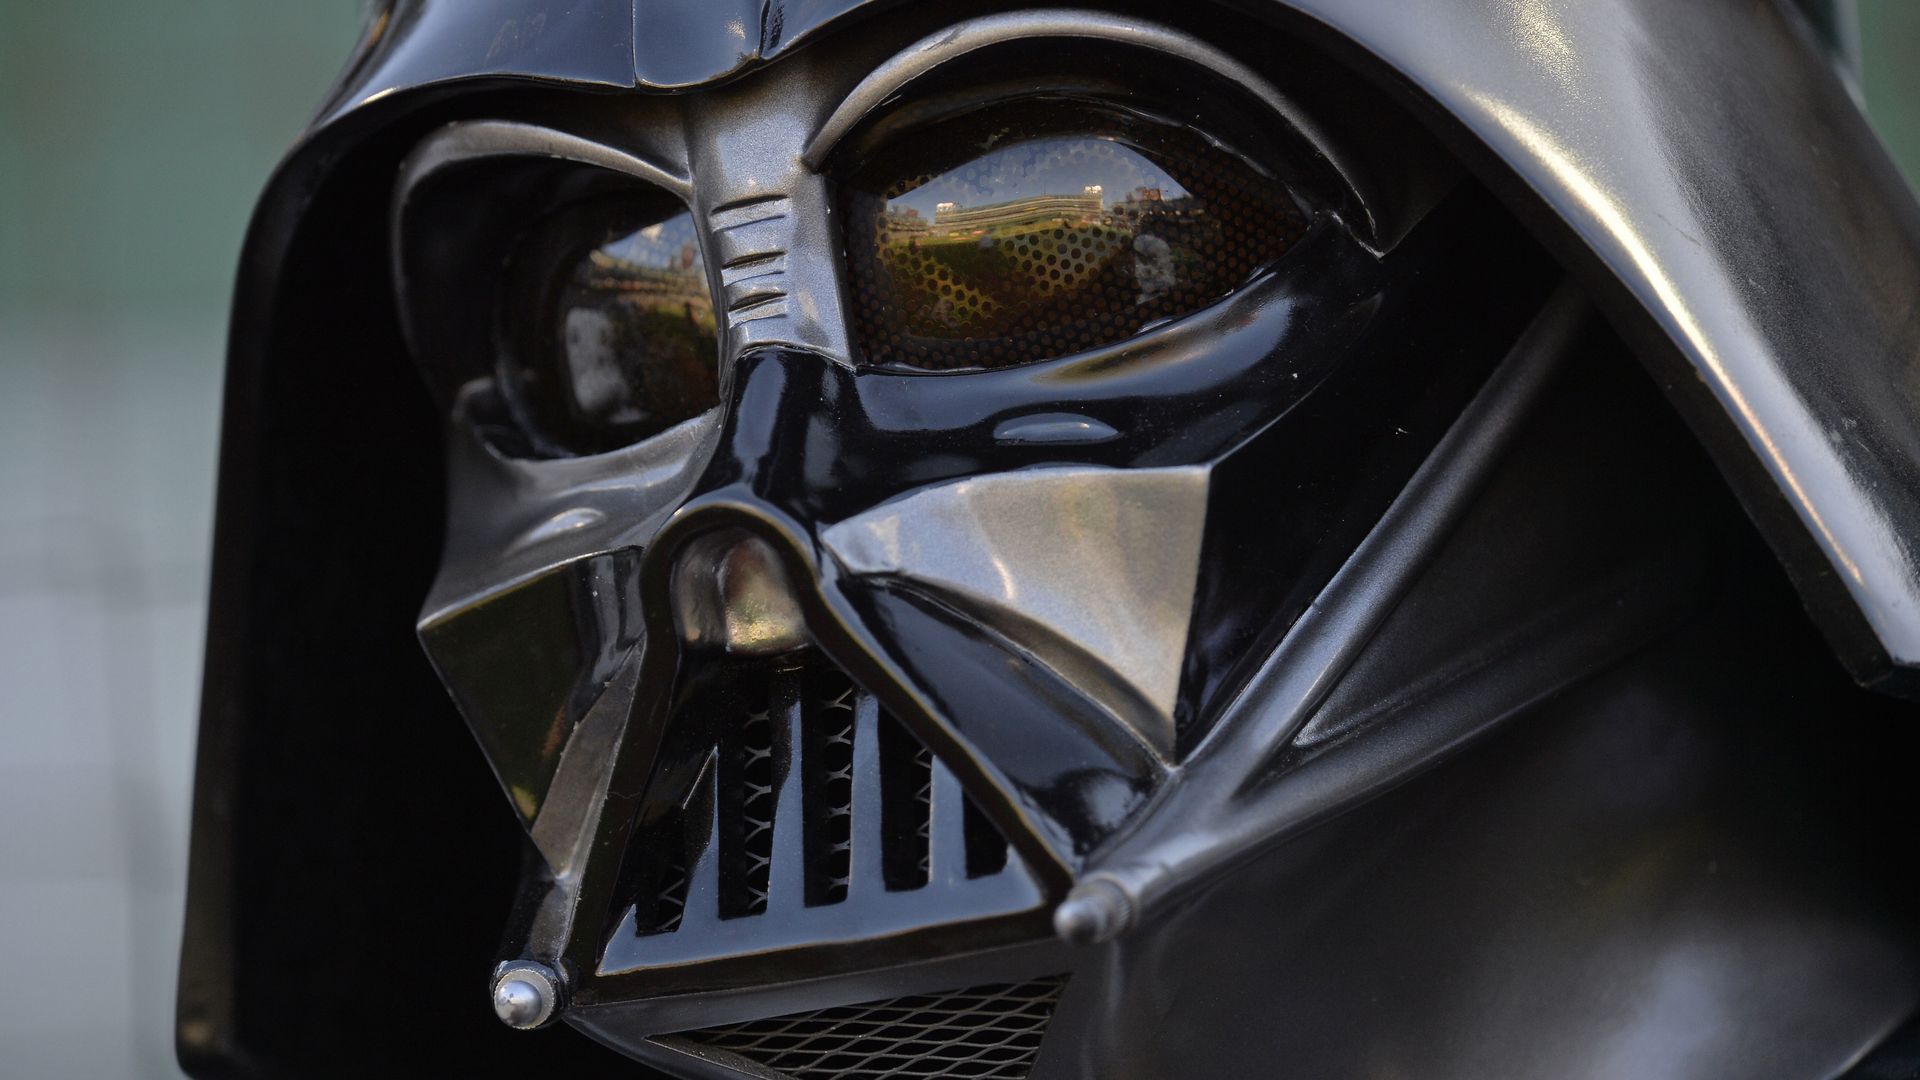 A Darth Vader helmet.